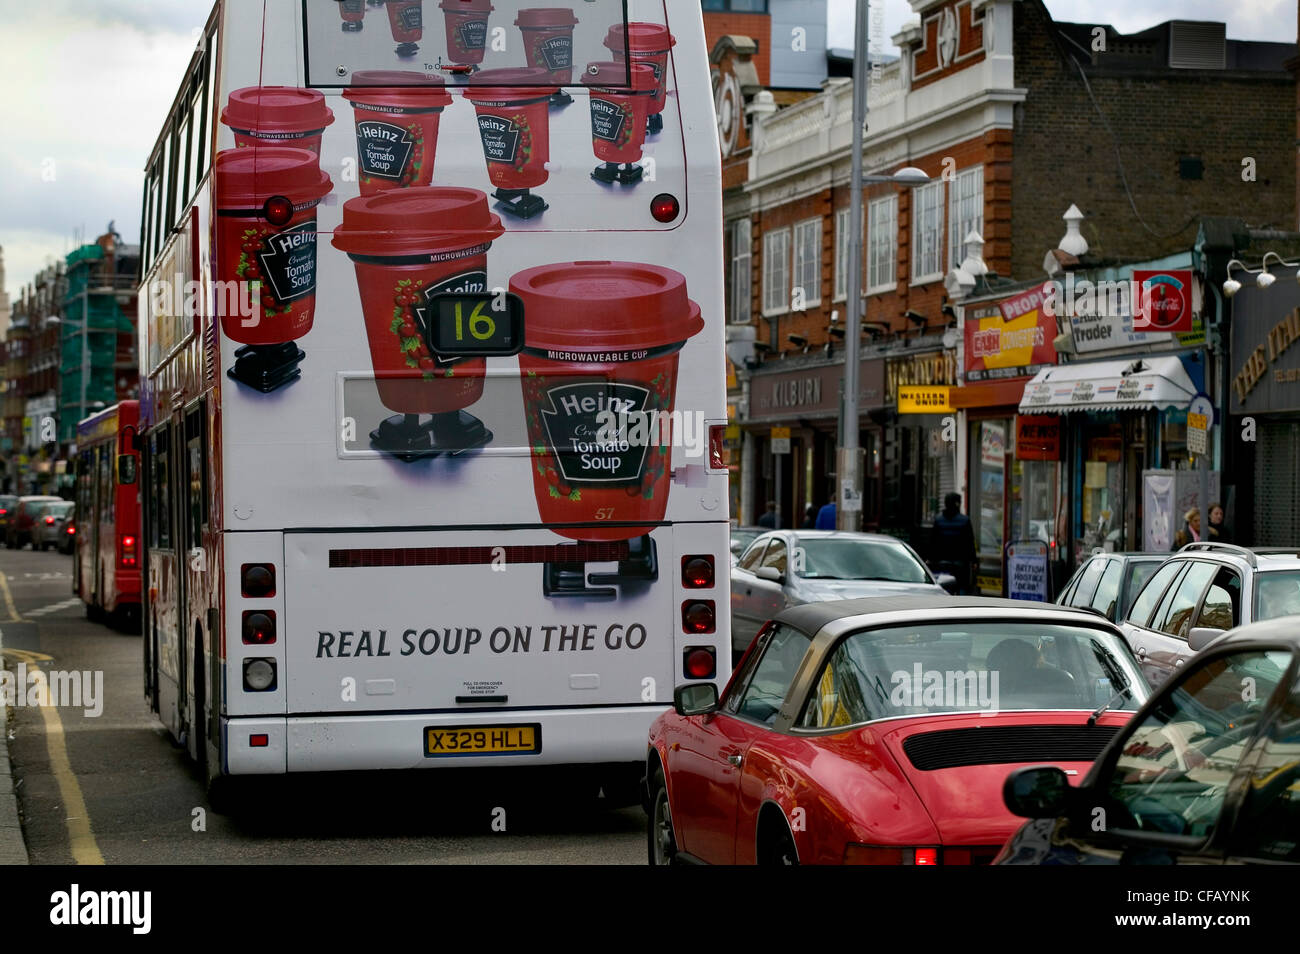 Kilburn, Londres. Décorées avec bus annonce pour la soupe aux tomates Heinz. Banque D'Images